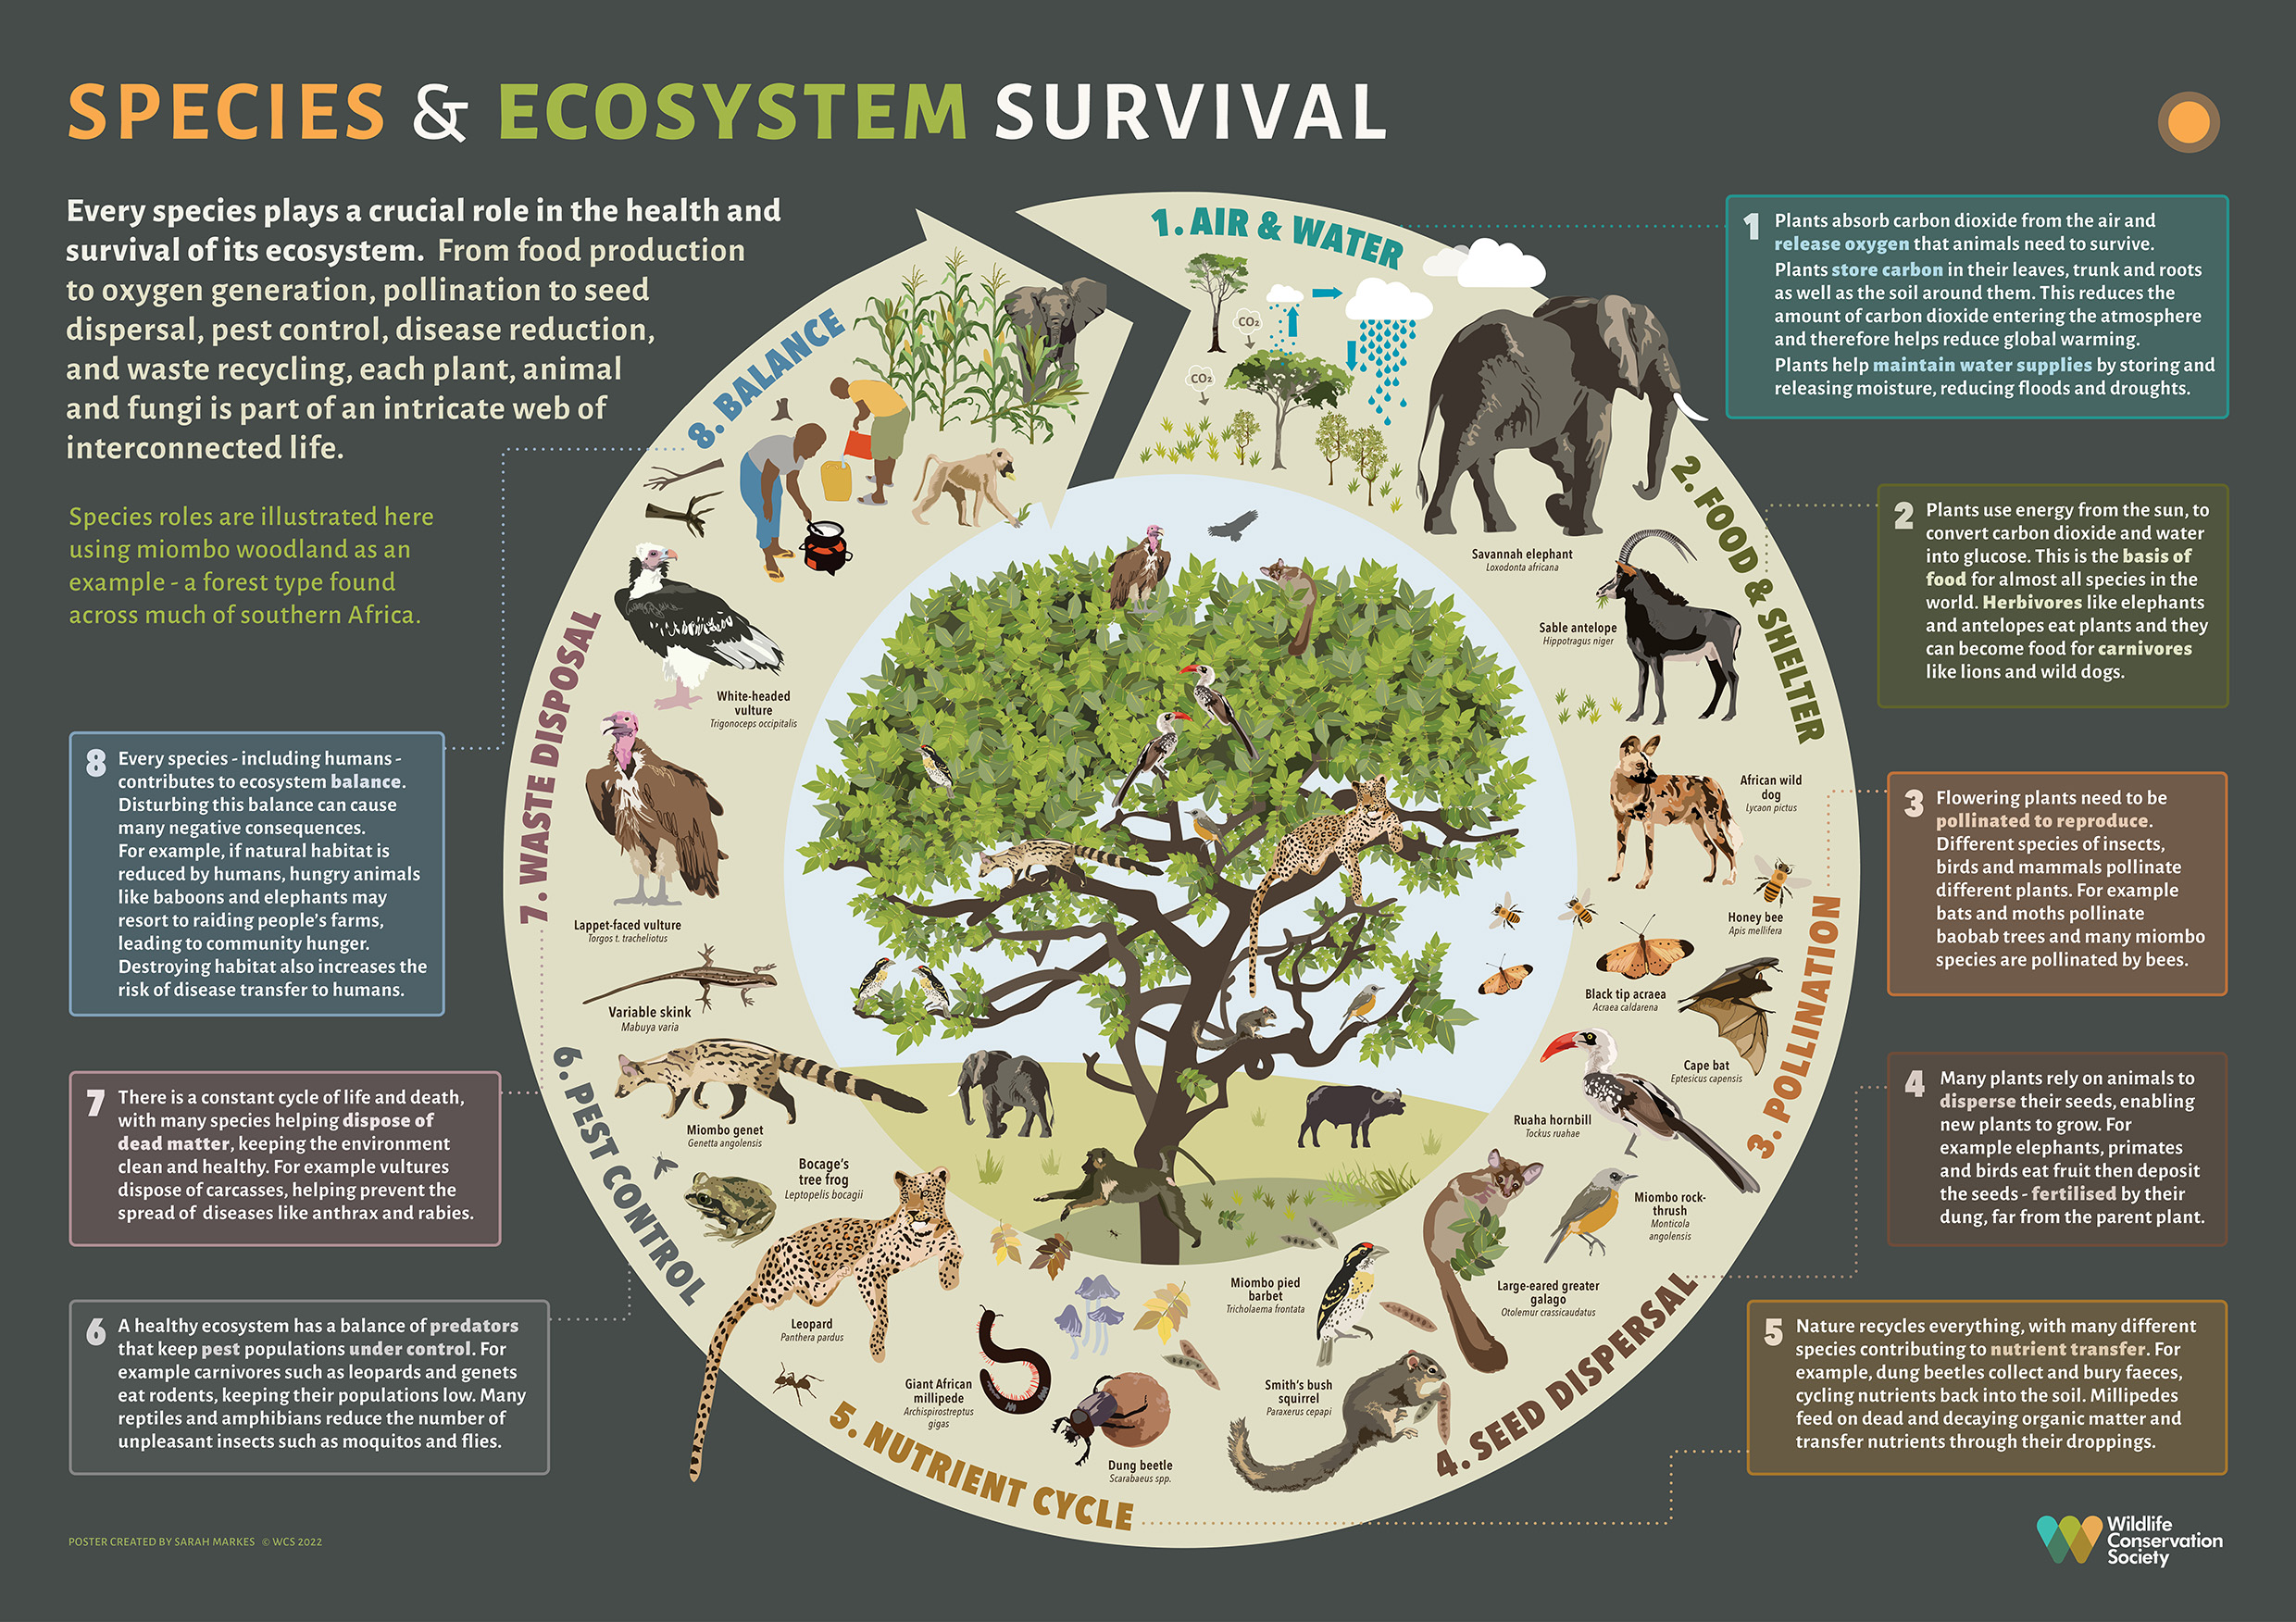 Understanding Species Roles in Ecosystem Survival